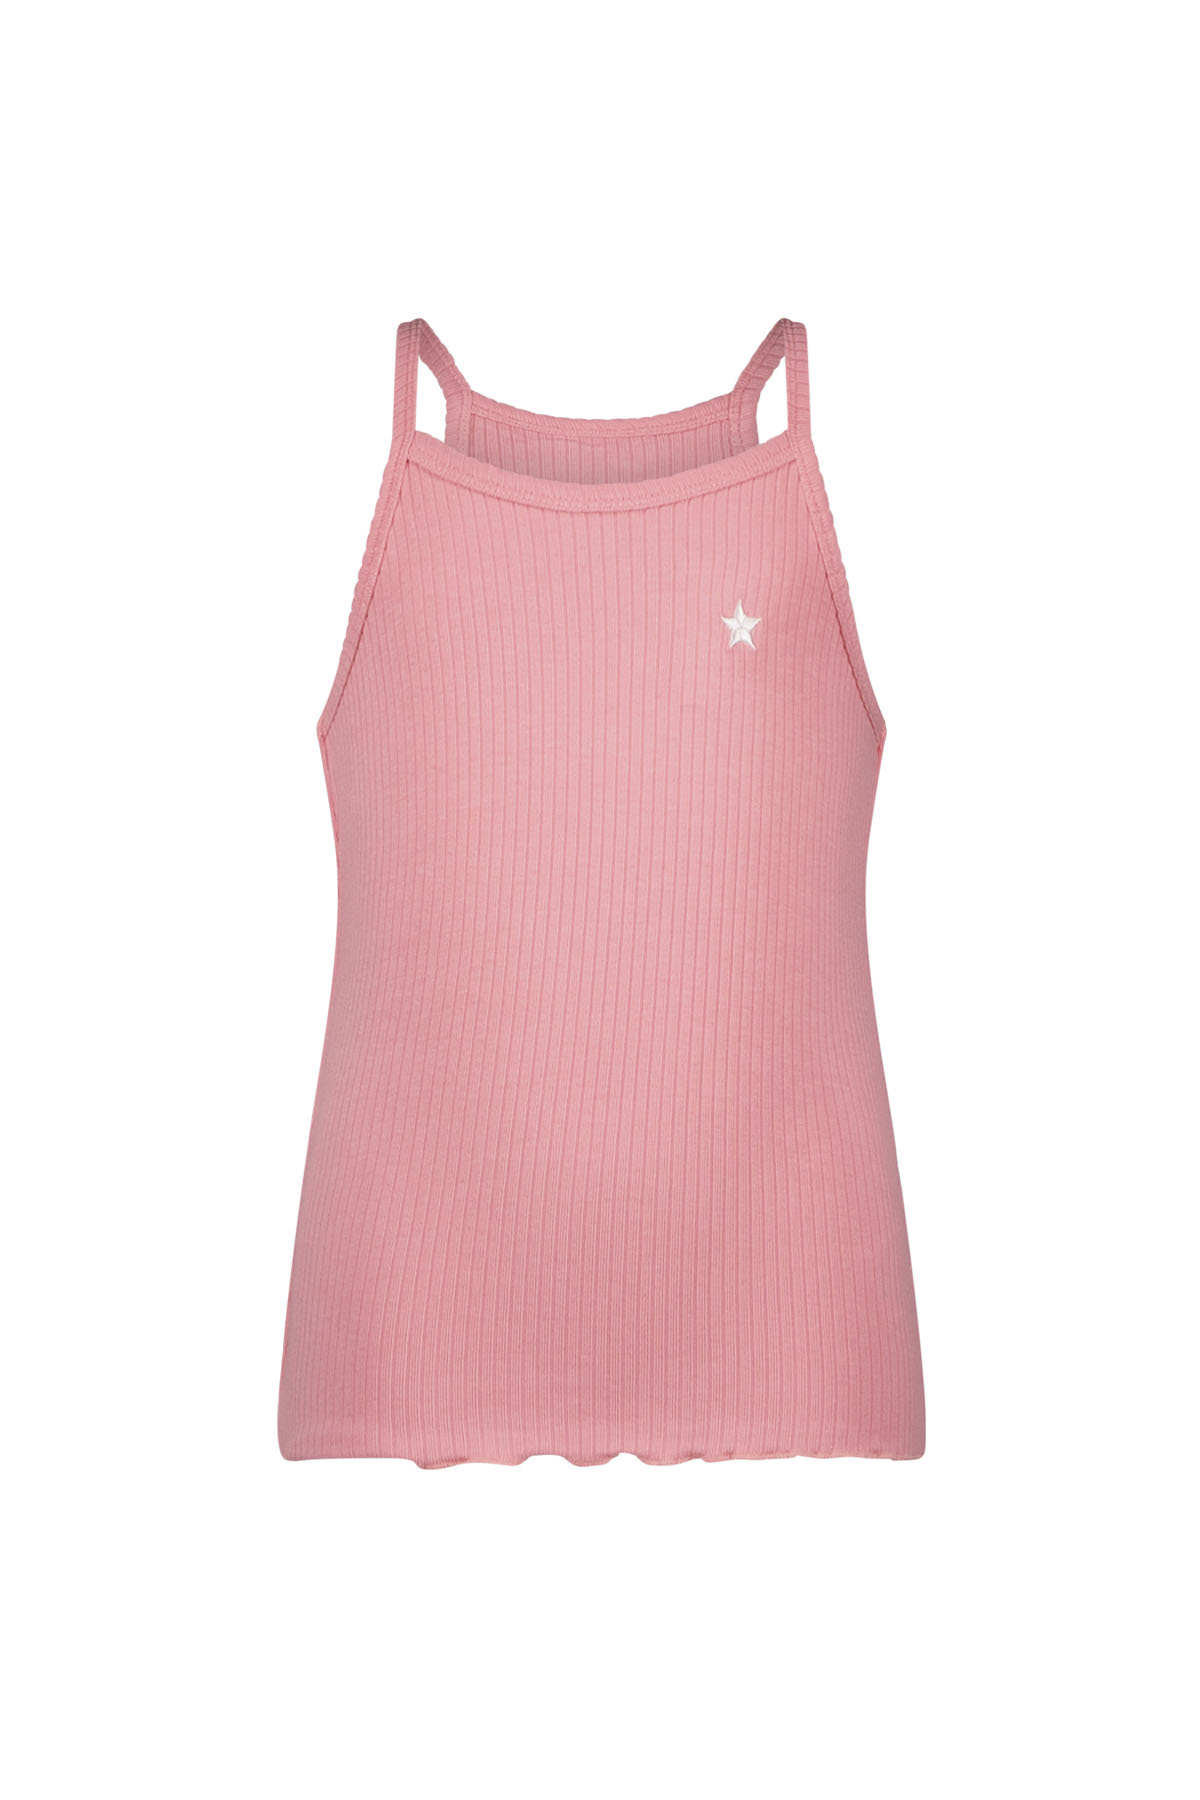 Like Flo F402-5480 Meisjes T-shirt - Pink - Maat 116